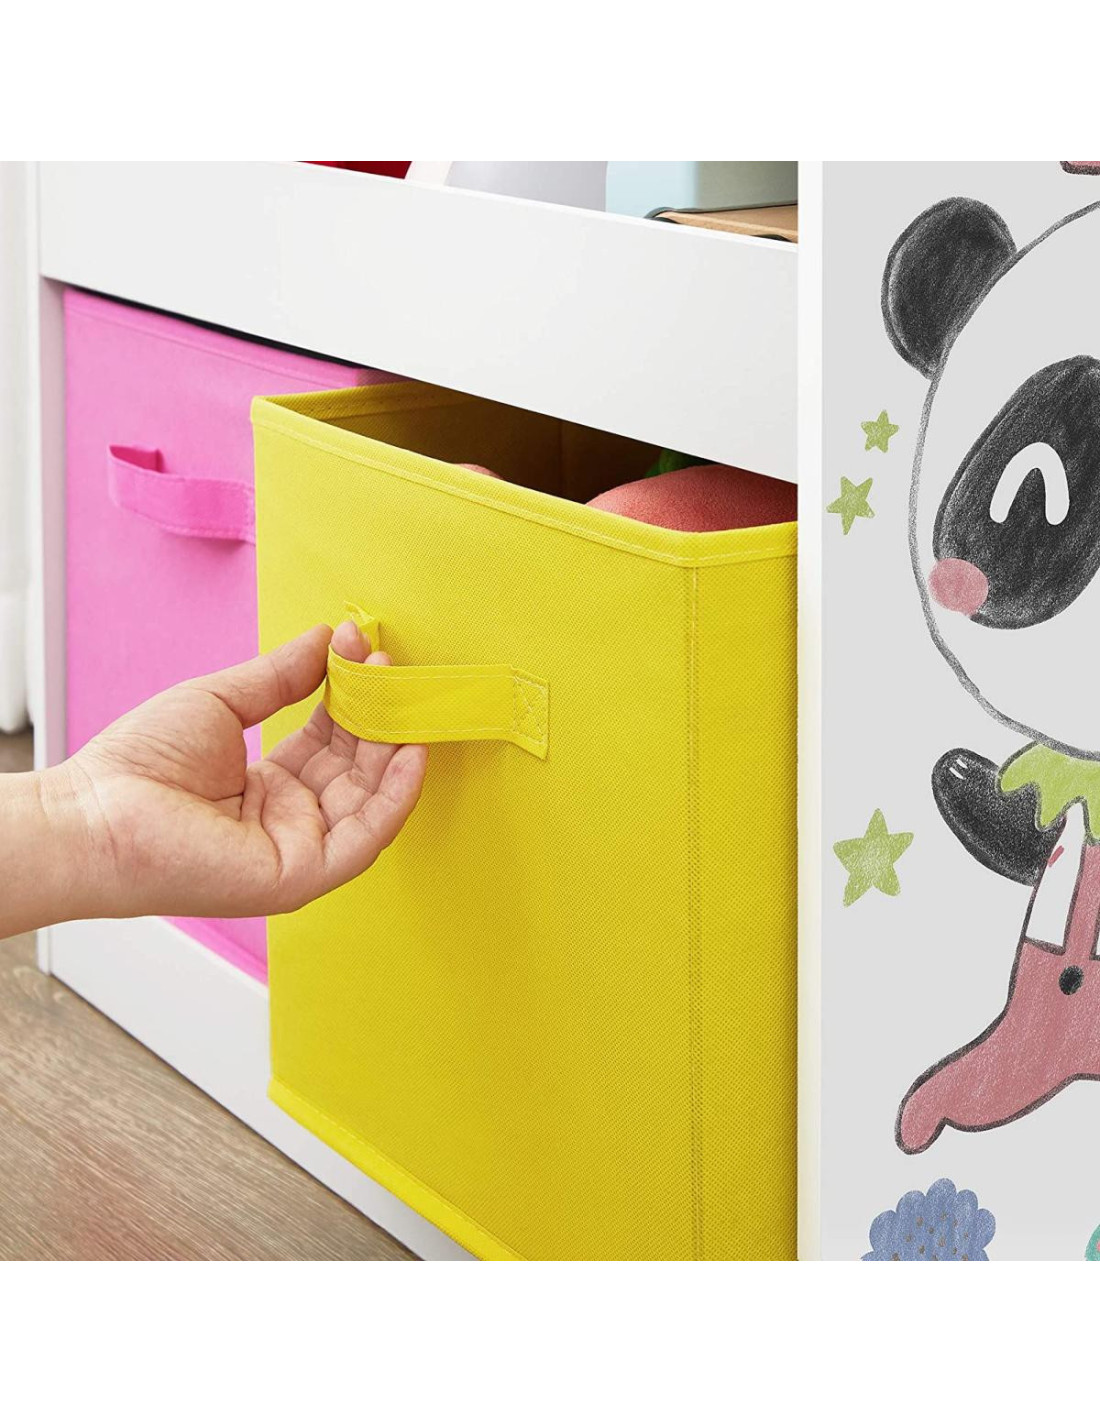 Bibliothèque enfant Petit Panda rangement livres jouets - Ciel & terre